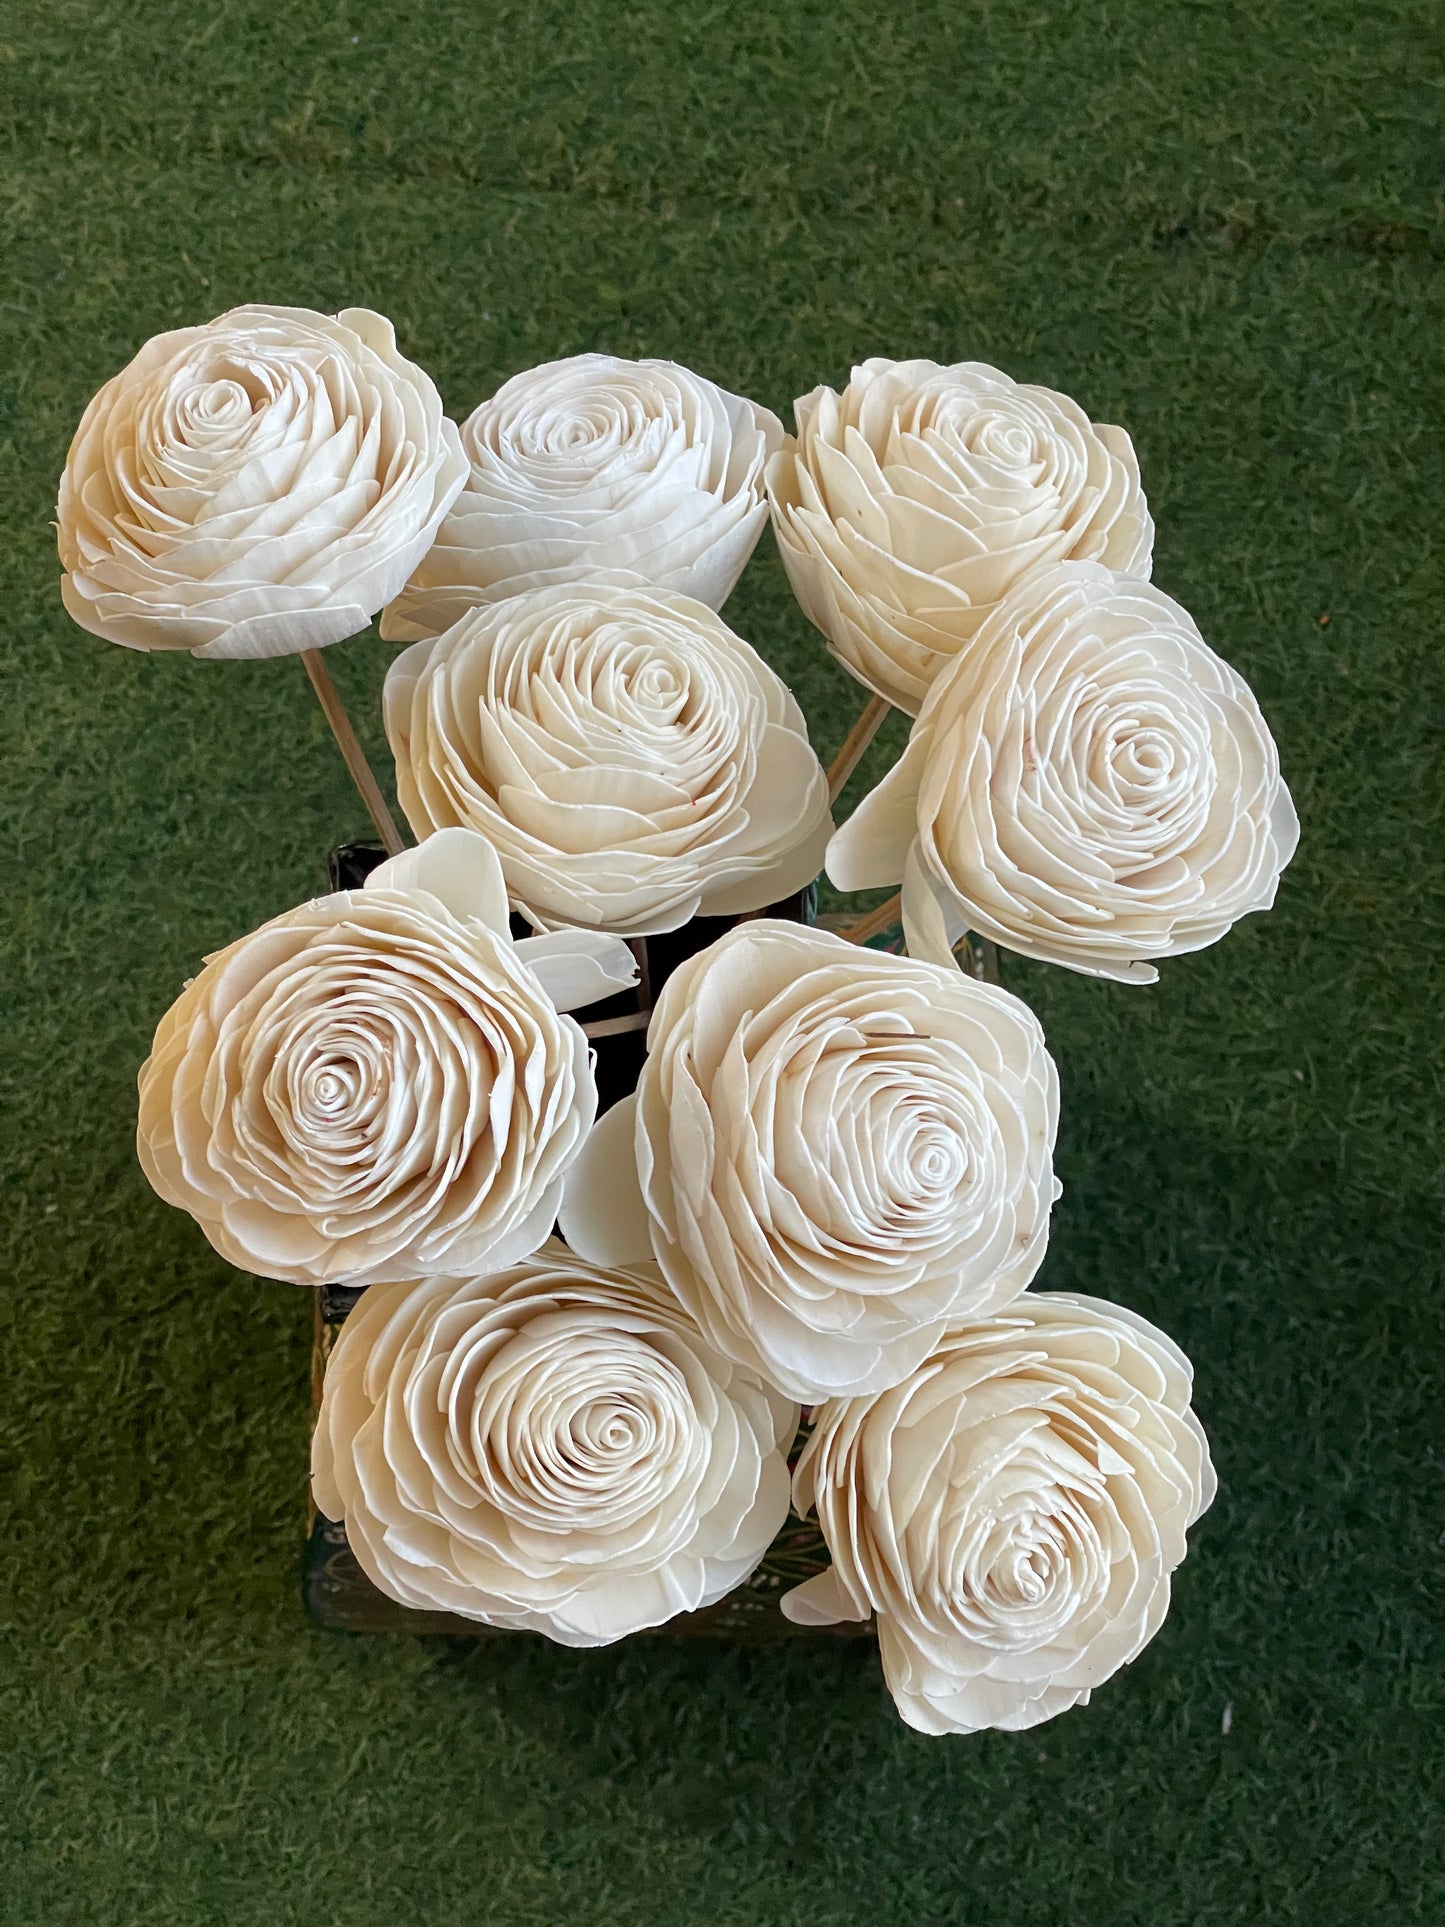 White Sholapith handmade rose - 12 cm size approximately